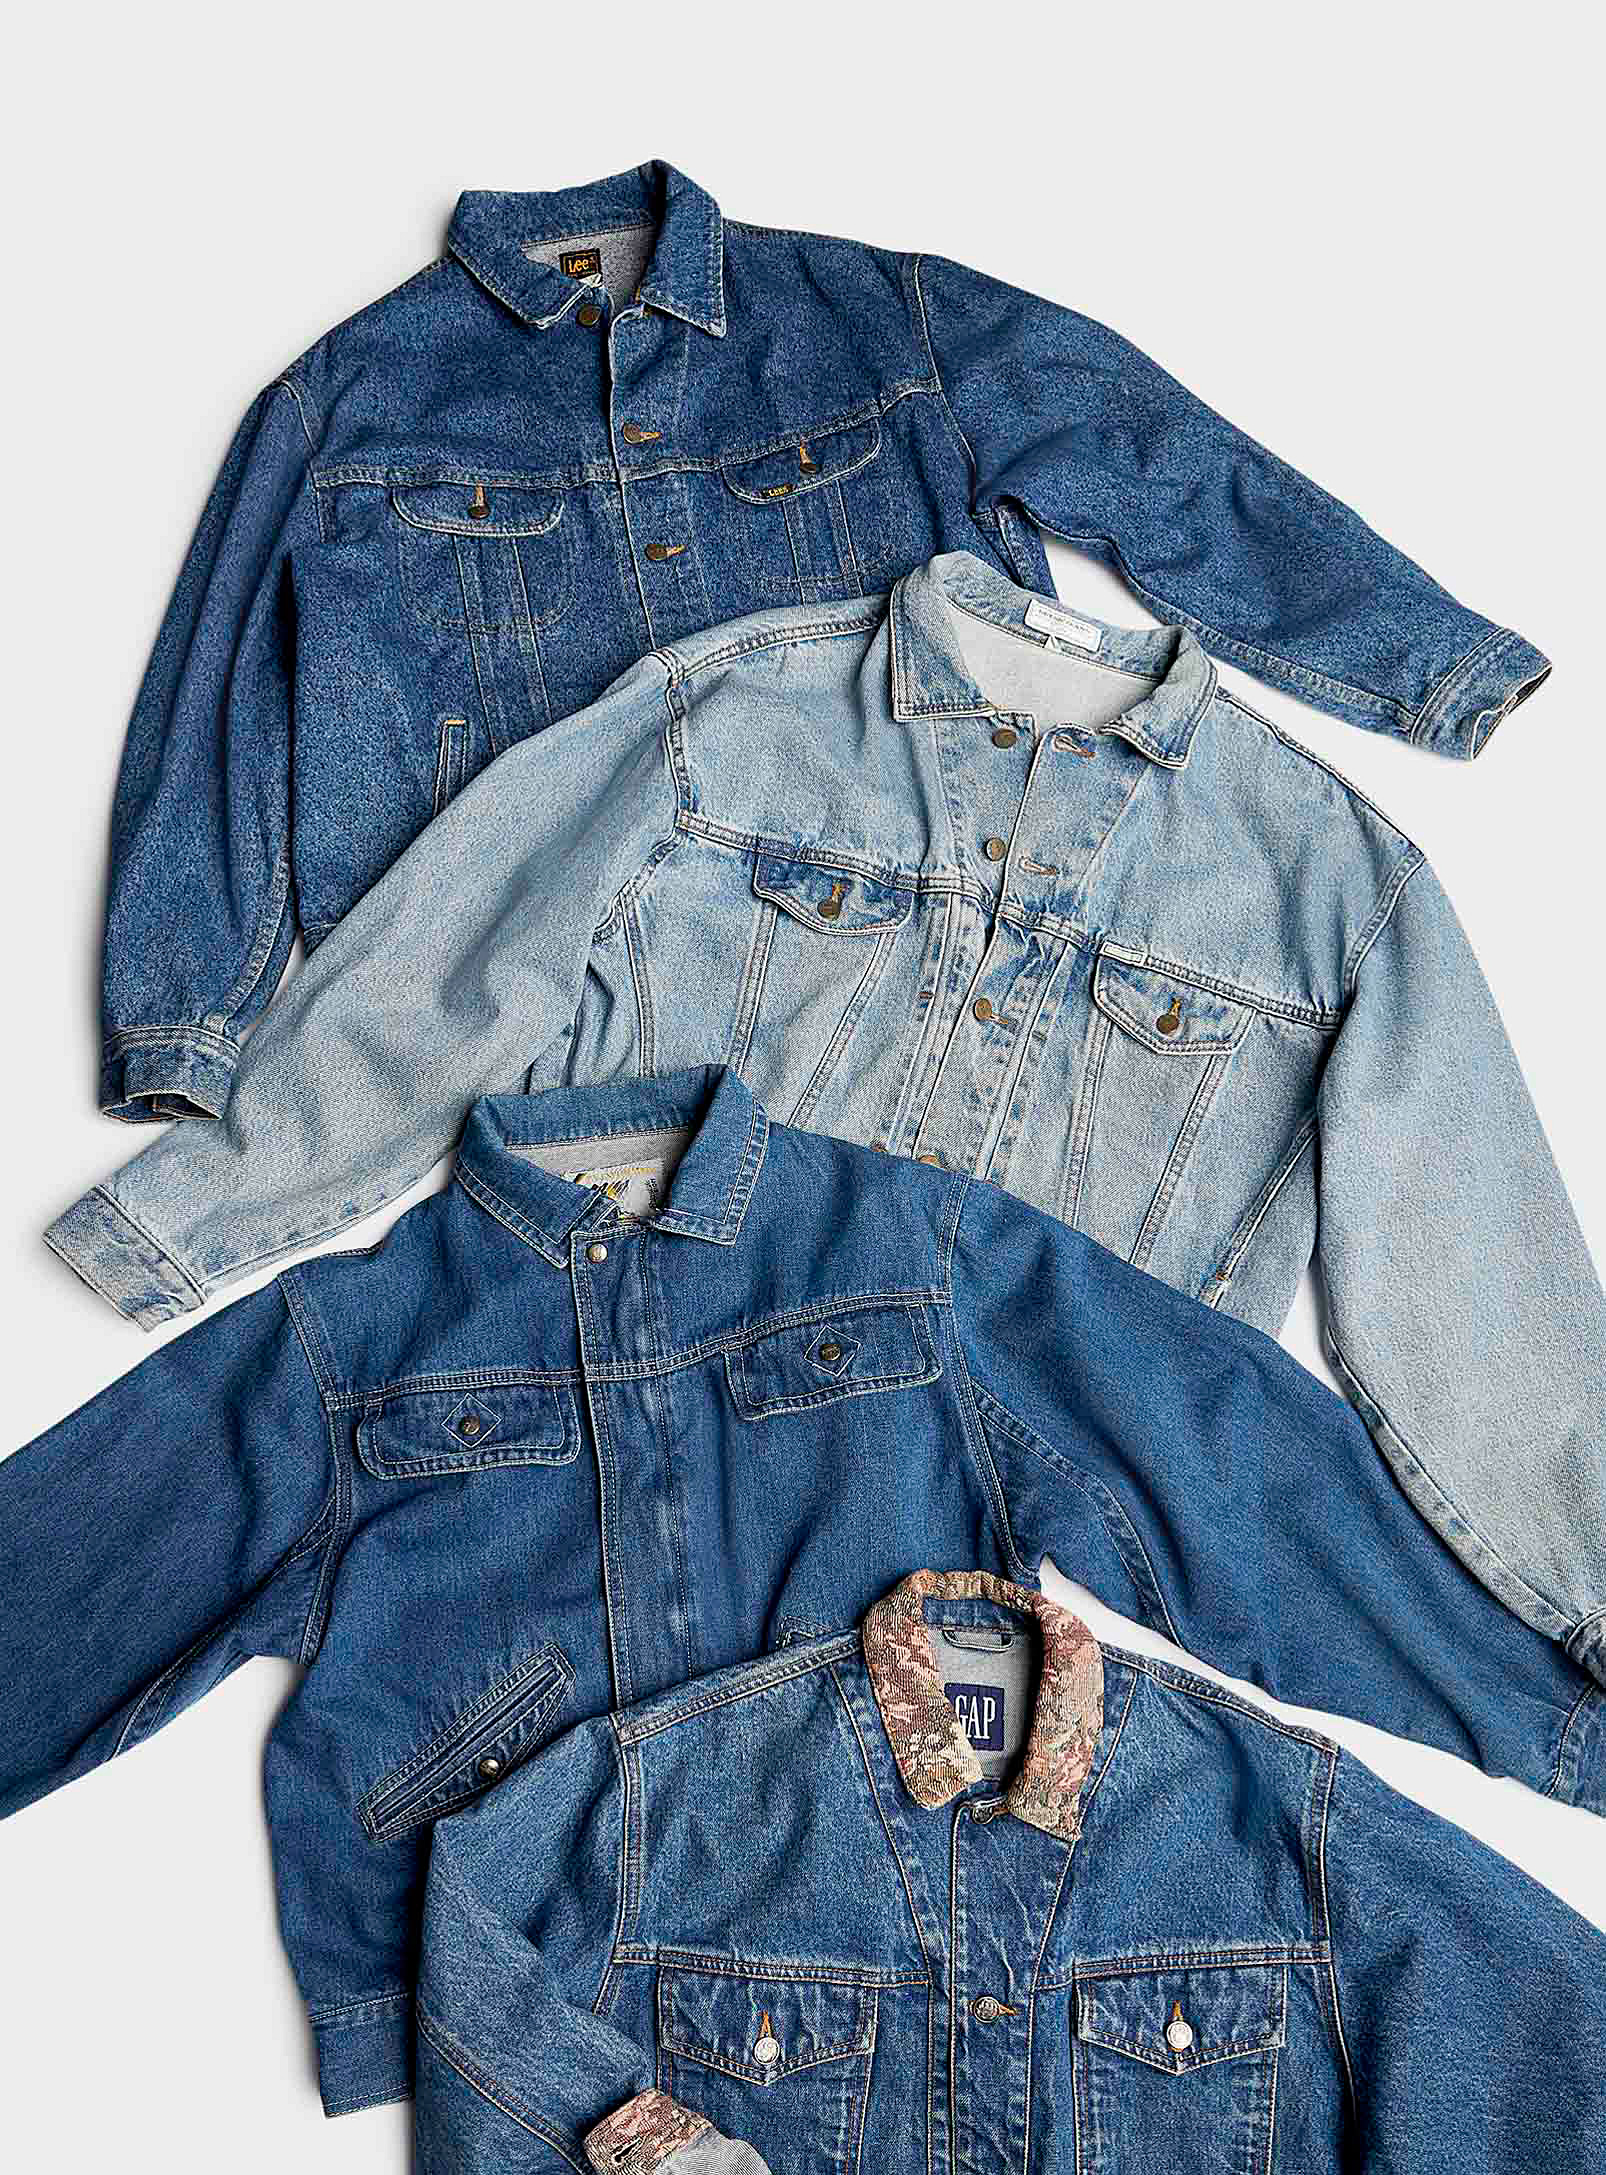 Twik - Women's Oversized jean jacket Archives - Unique vintage pieces